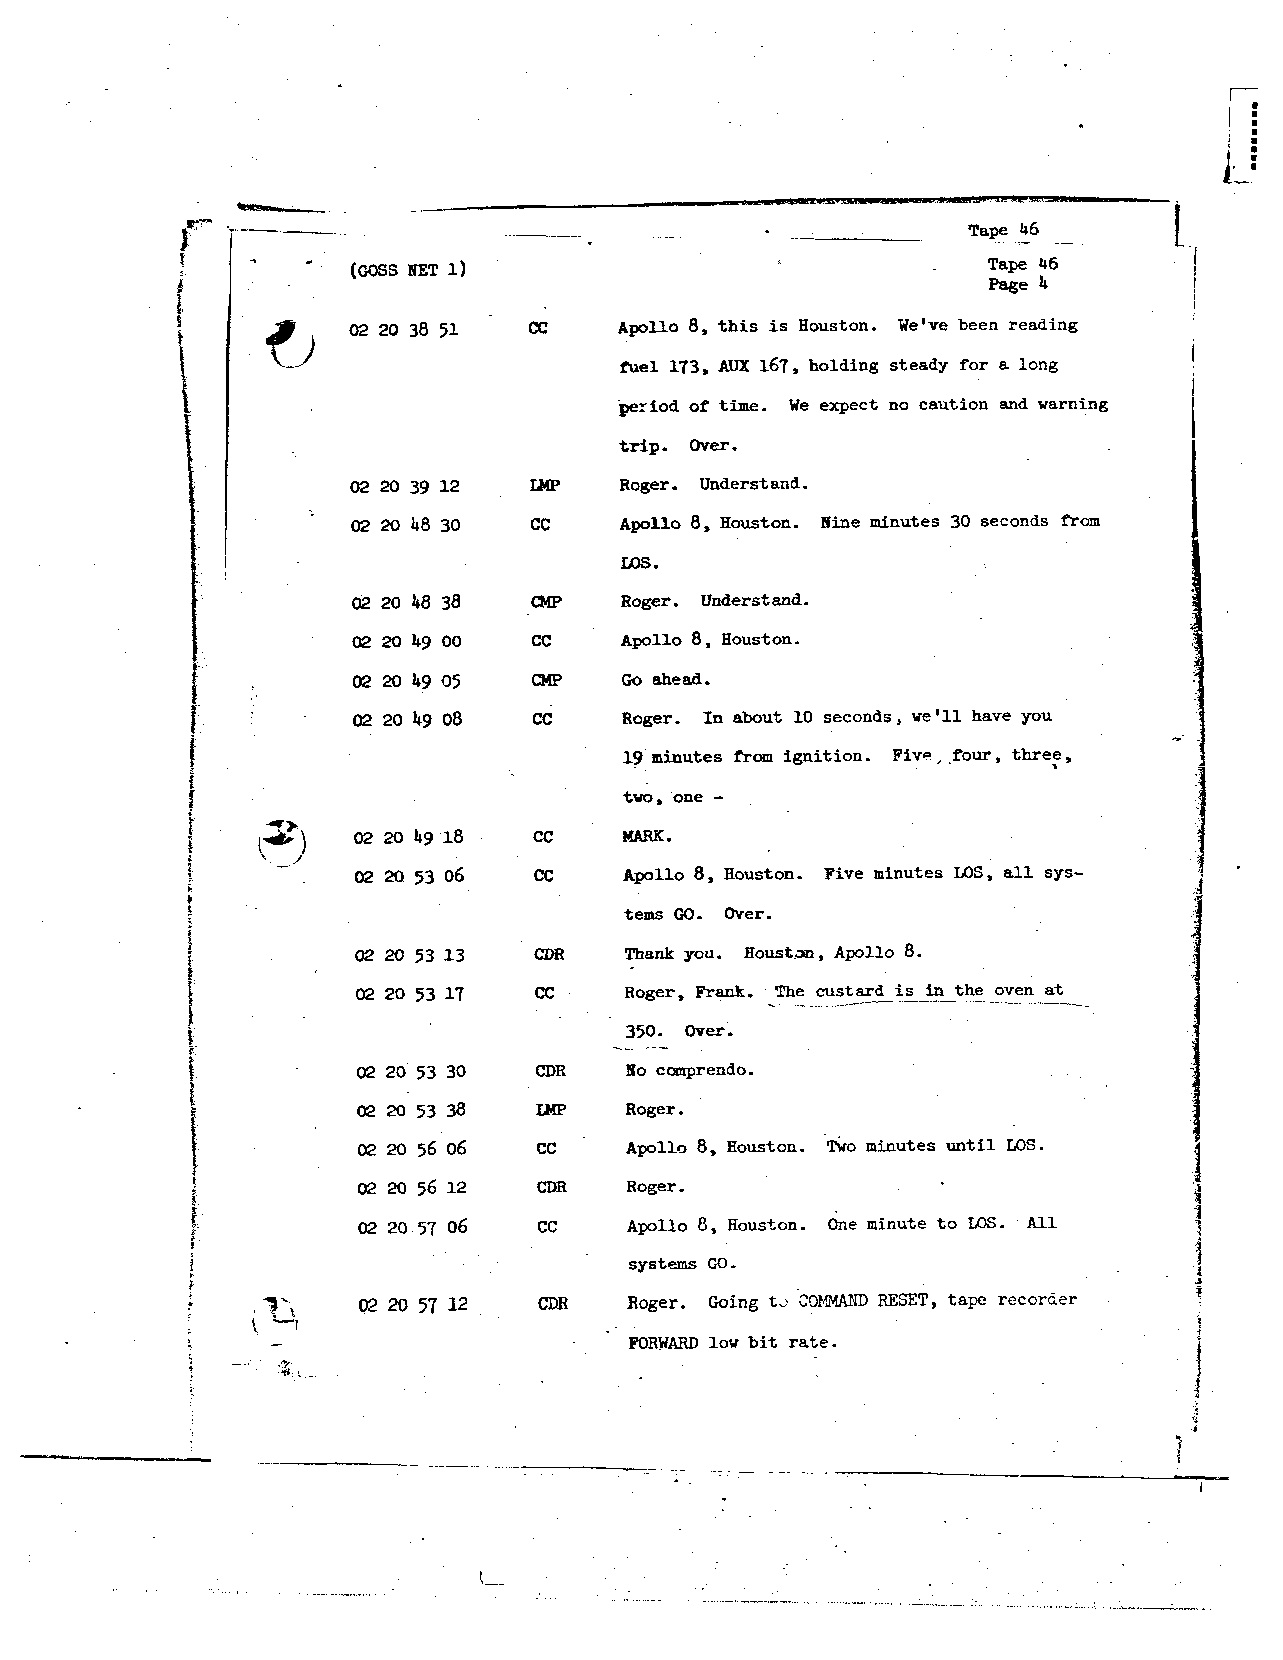 Page 356 of Apollo 8’s original transcript